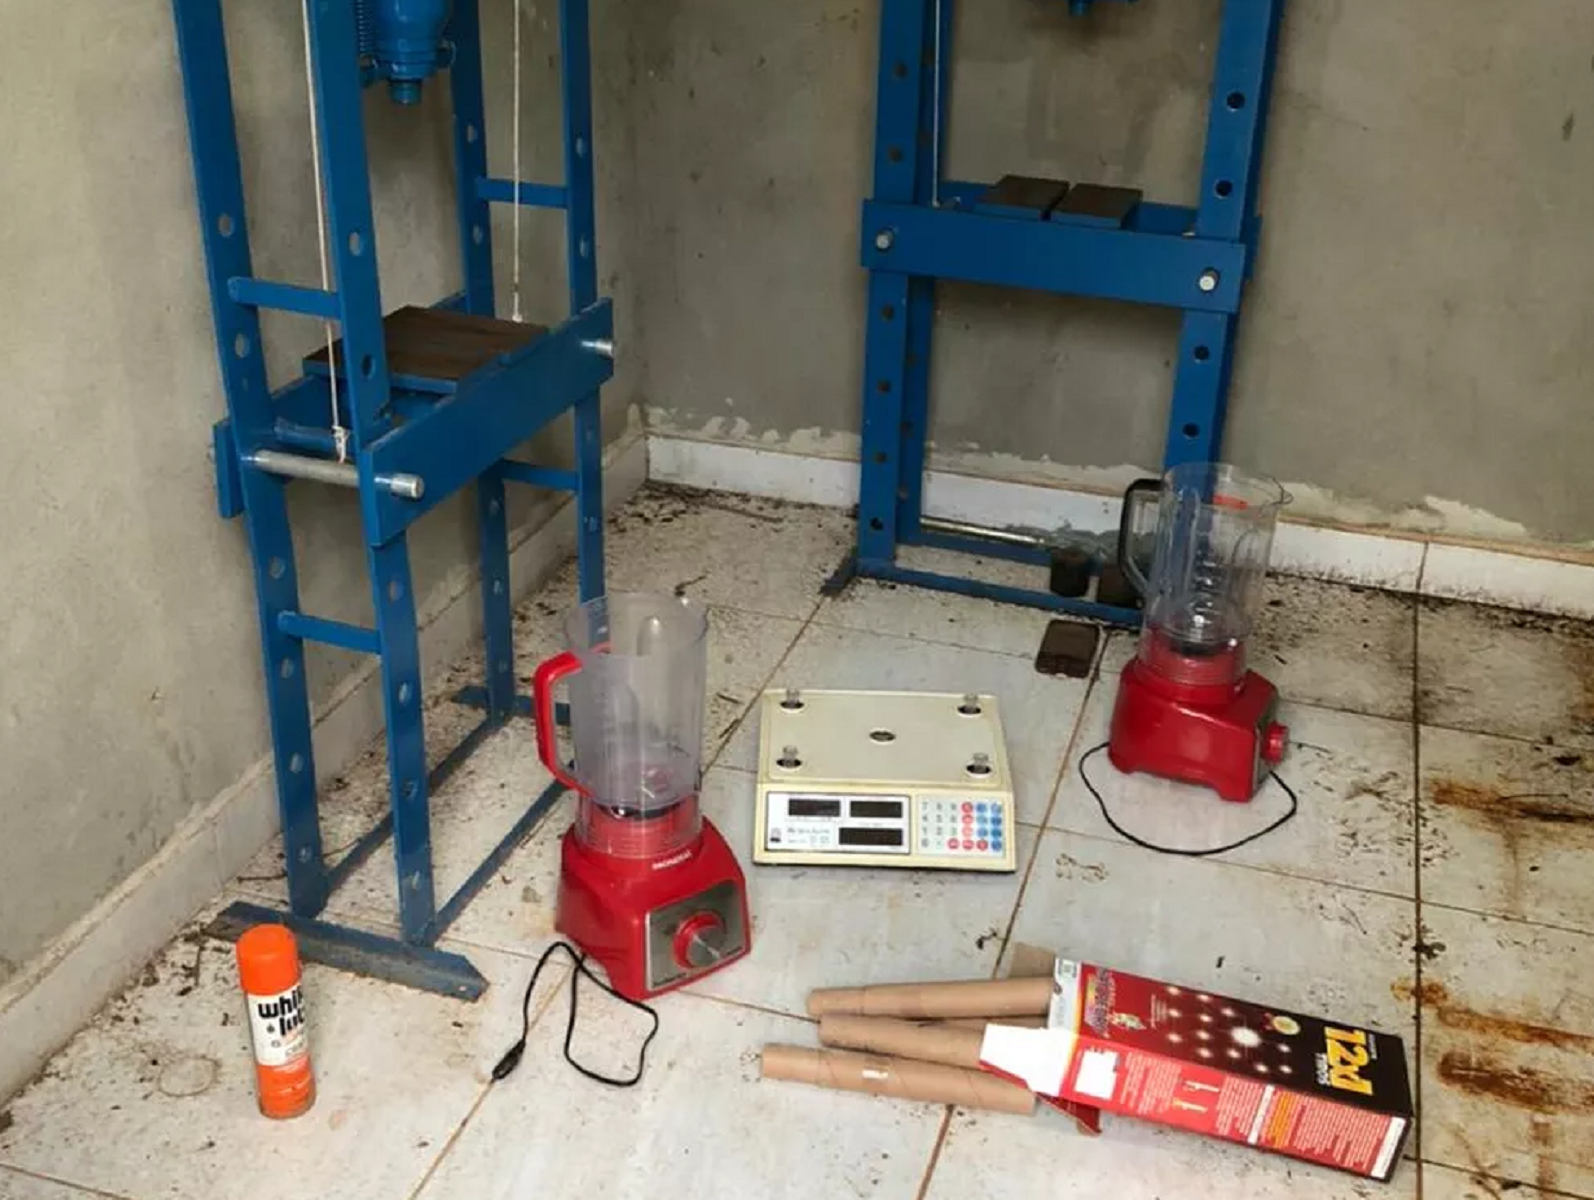 Operação Refino - Polícia Civil desmantela laboratório que refinava cocaína em São José de Mipibu